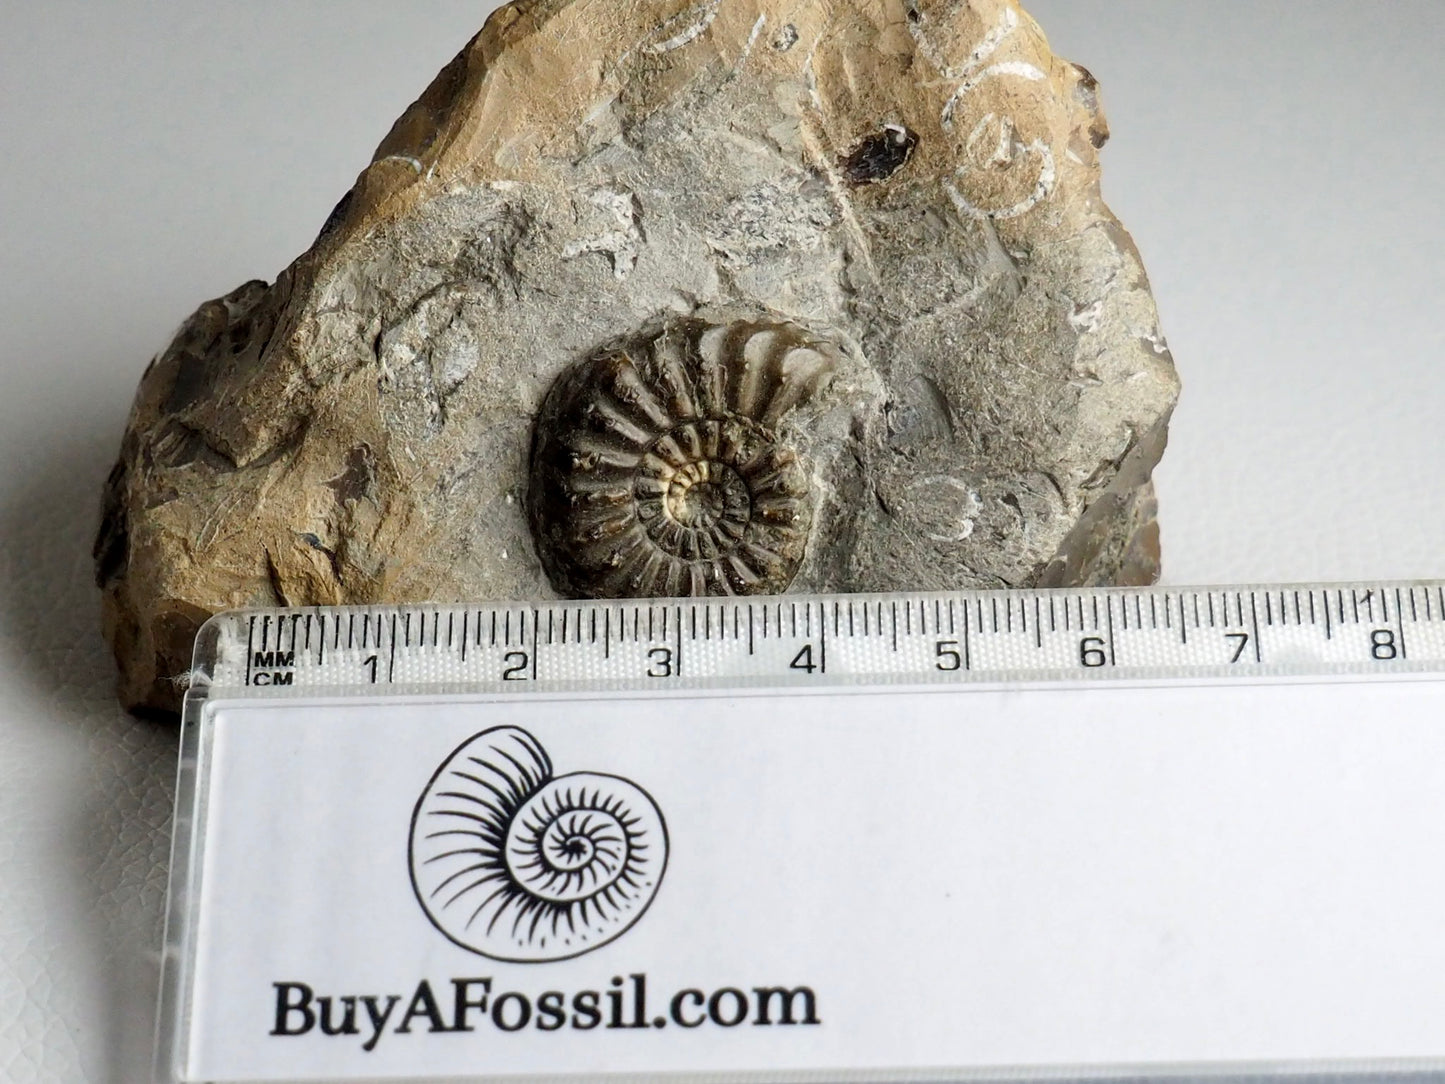 Amaltheus Subnodosus Ammonite CutBase